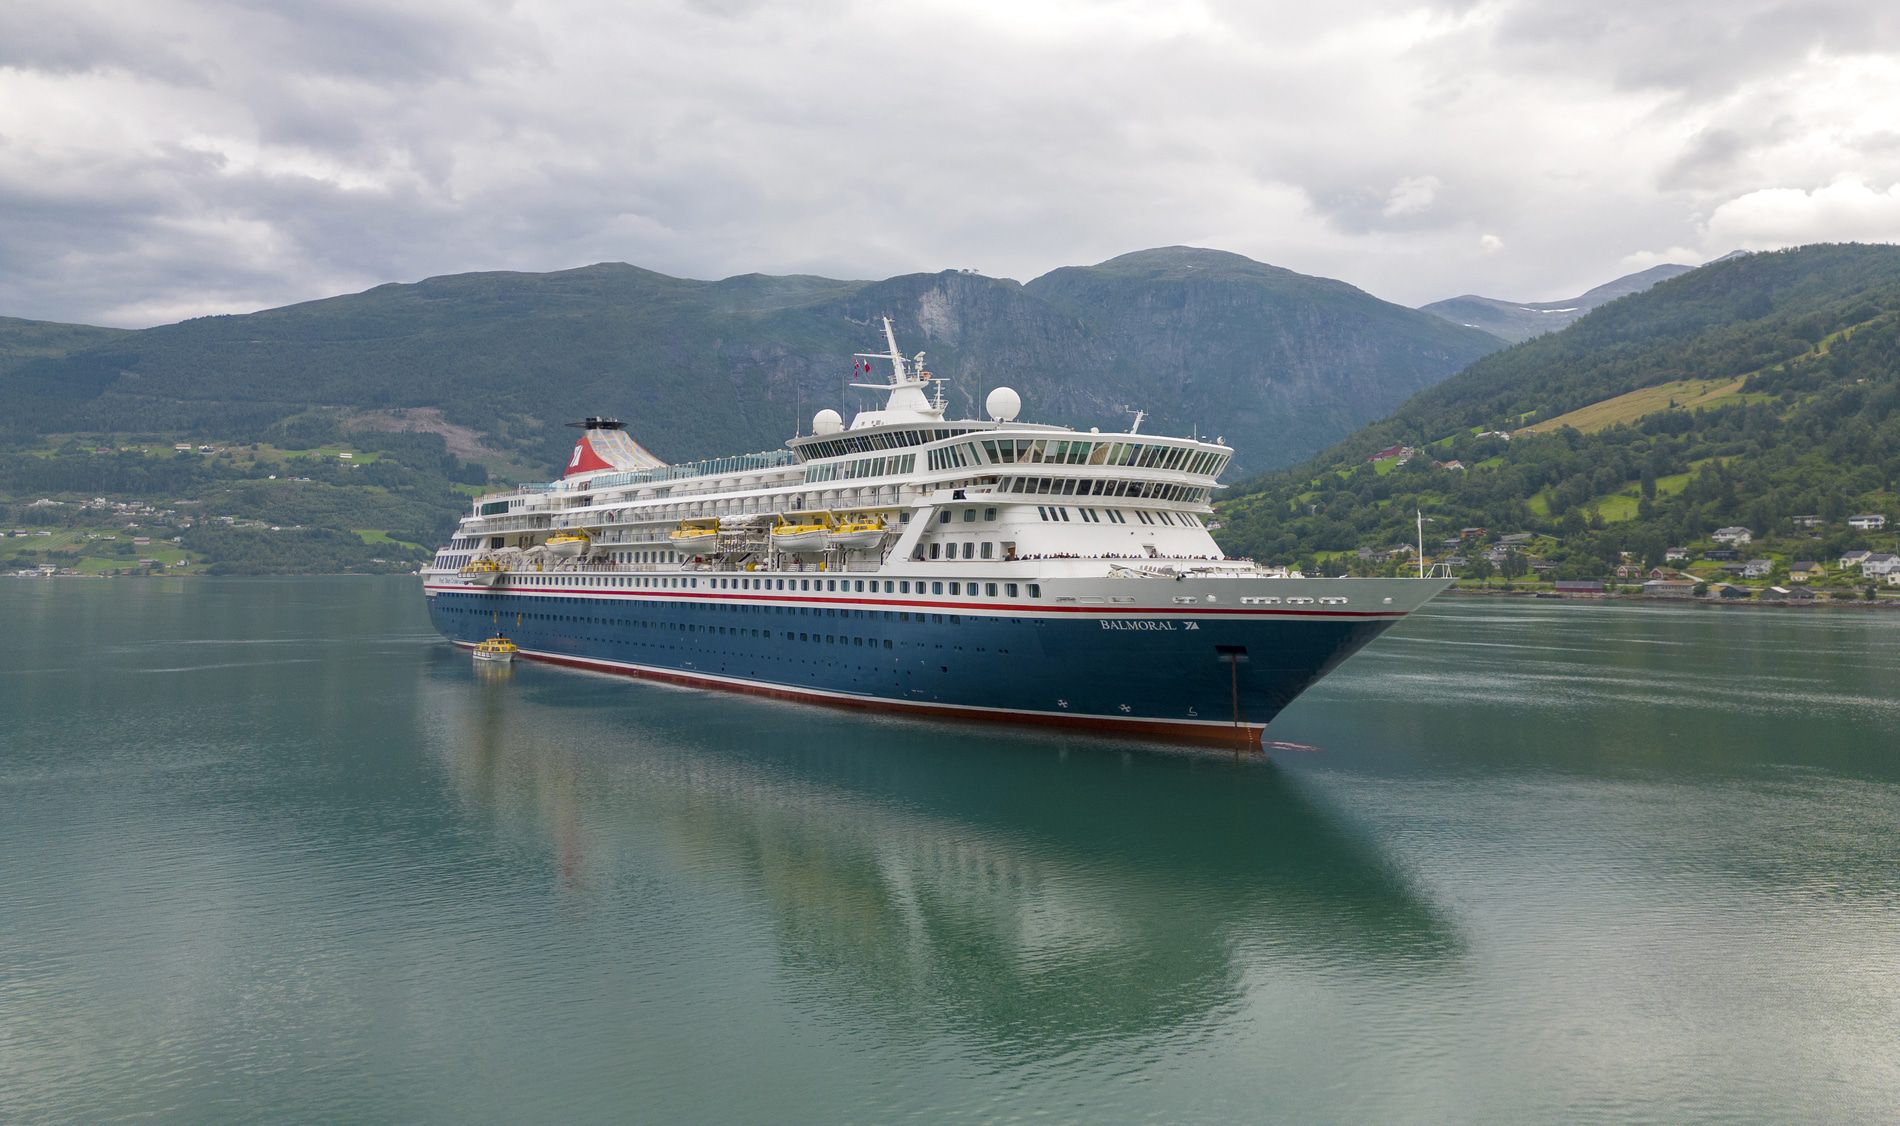 A photo of the Balmoral cruise ship